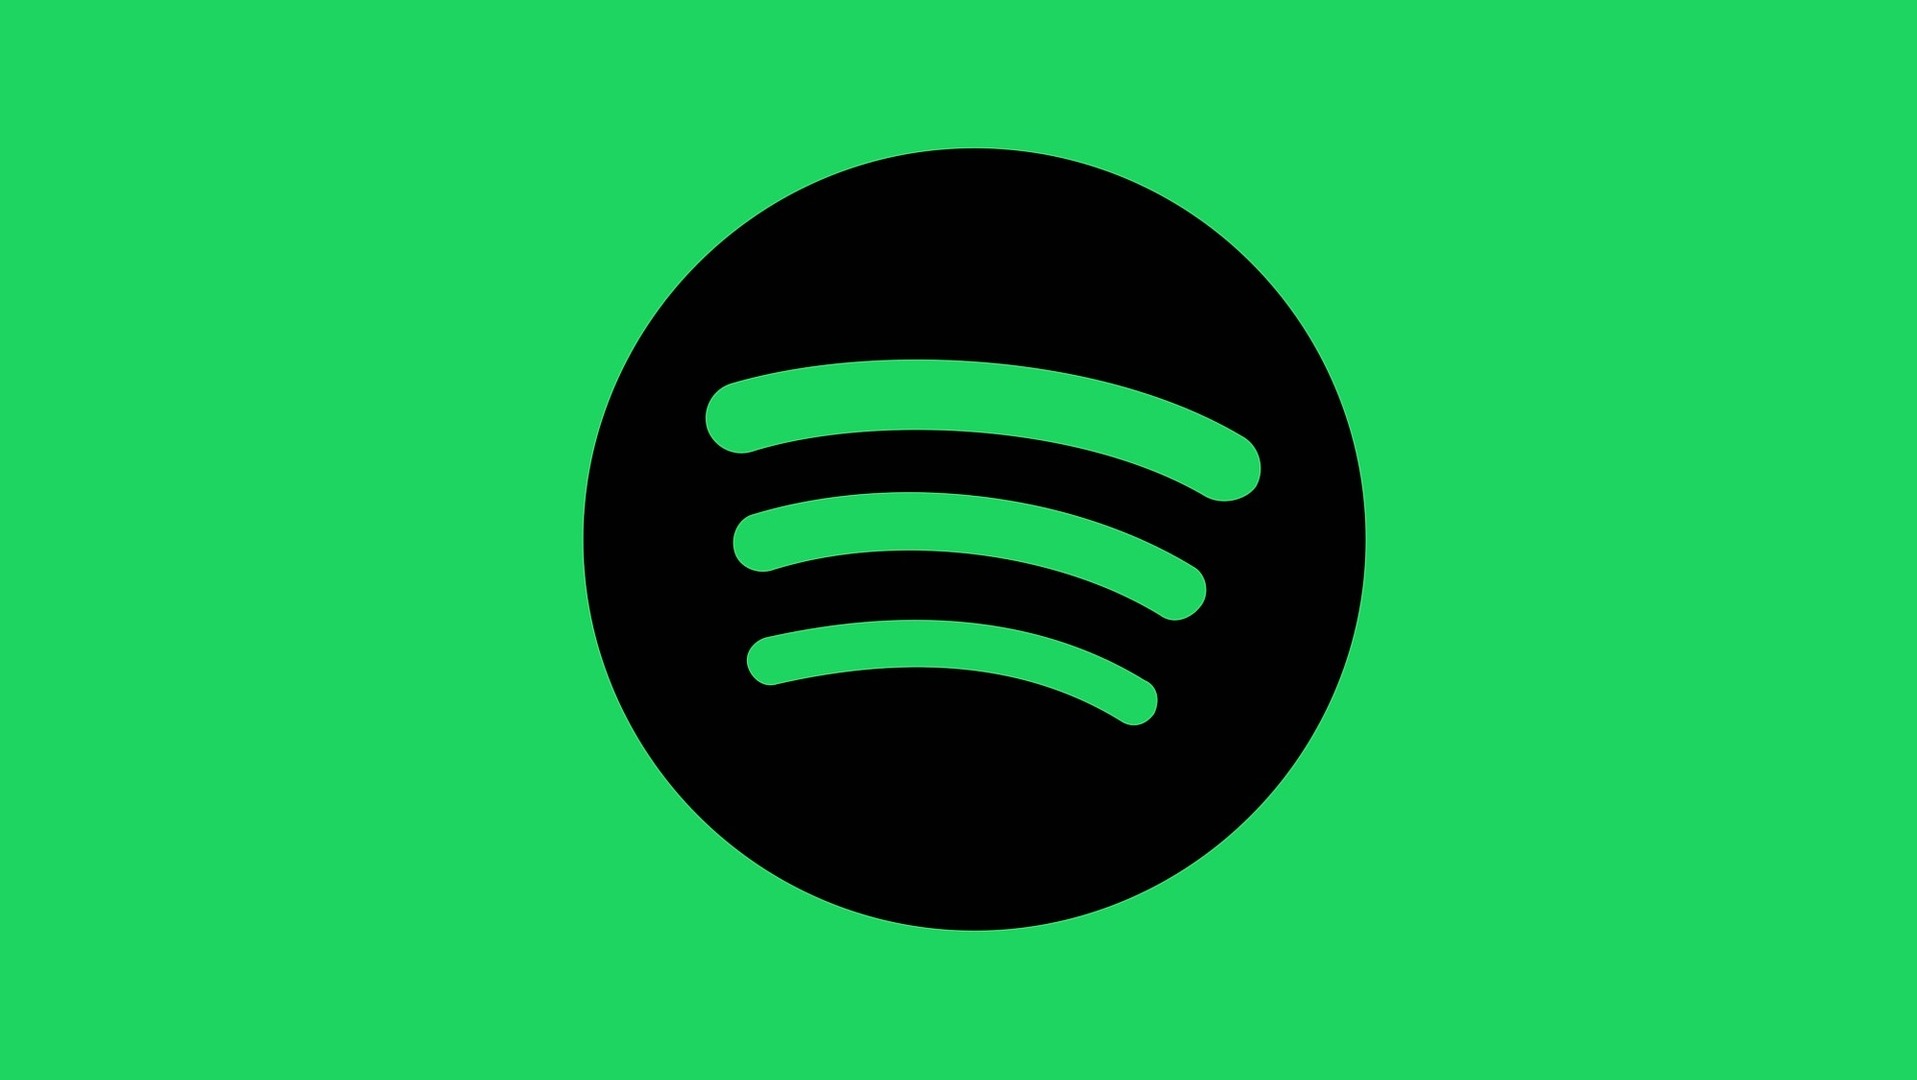 Logo do Spotify -- um círculo preto com ondas representando o som -- sobre fundo verde.